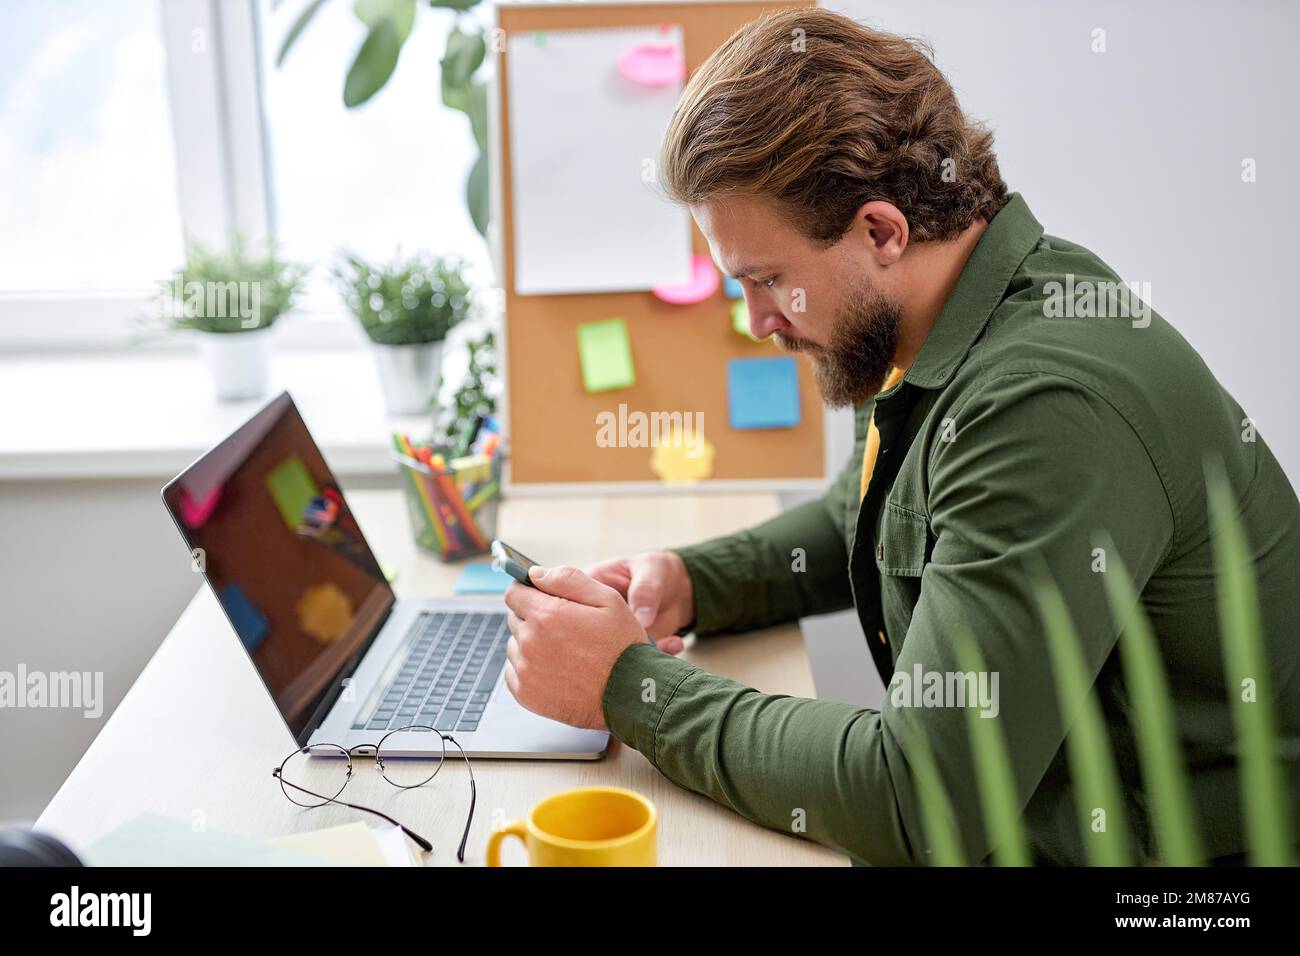 Der junge Mann sitzt mit dem Smartphone und ruht sich während der Arbeit in einem hellen, modernen Büro aus, allein. Ein bärtiger weißer Kerl in Freizeitkleidung macht eine Pause beim Tippen von Messa Stockfoto